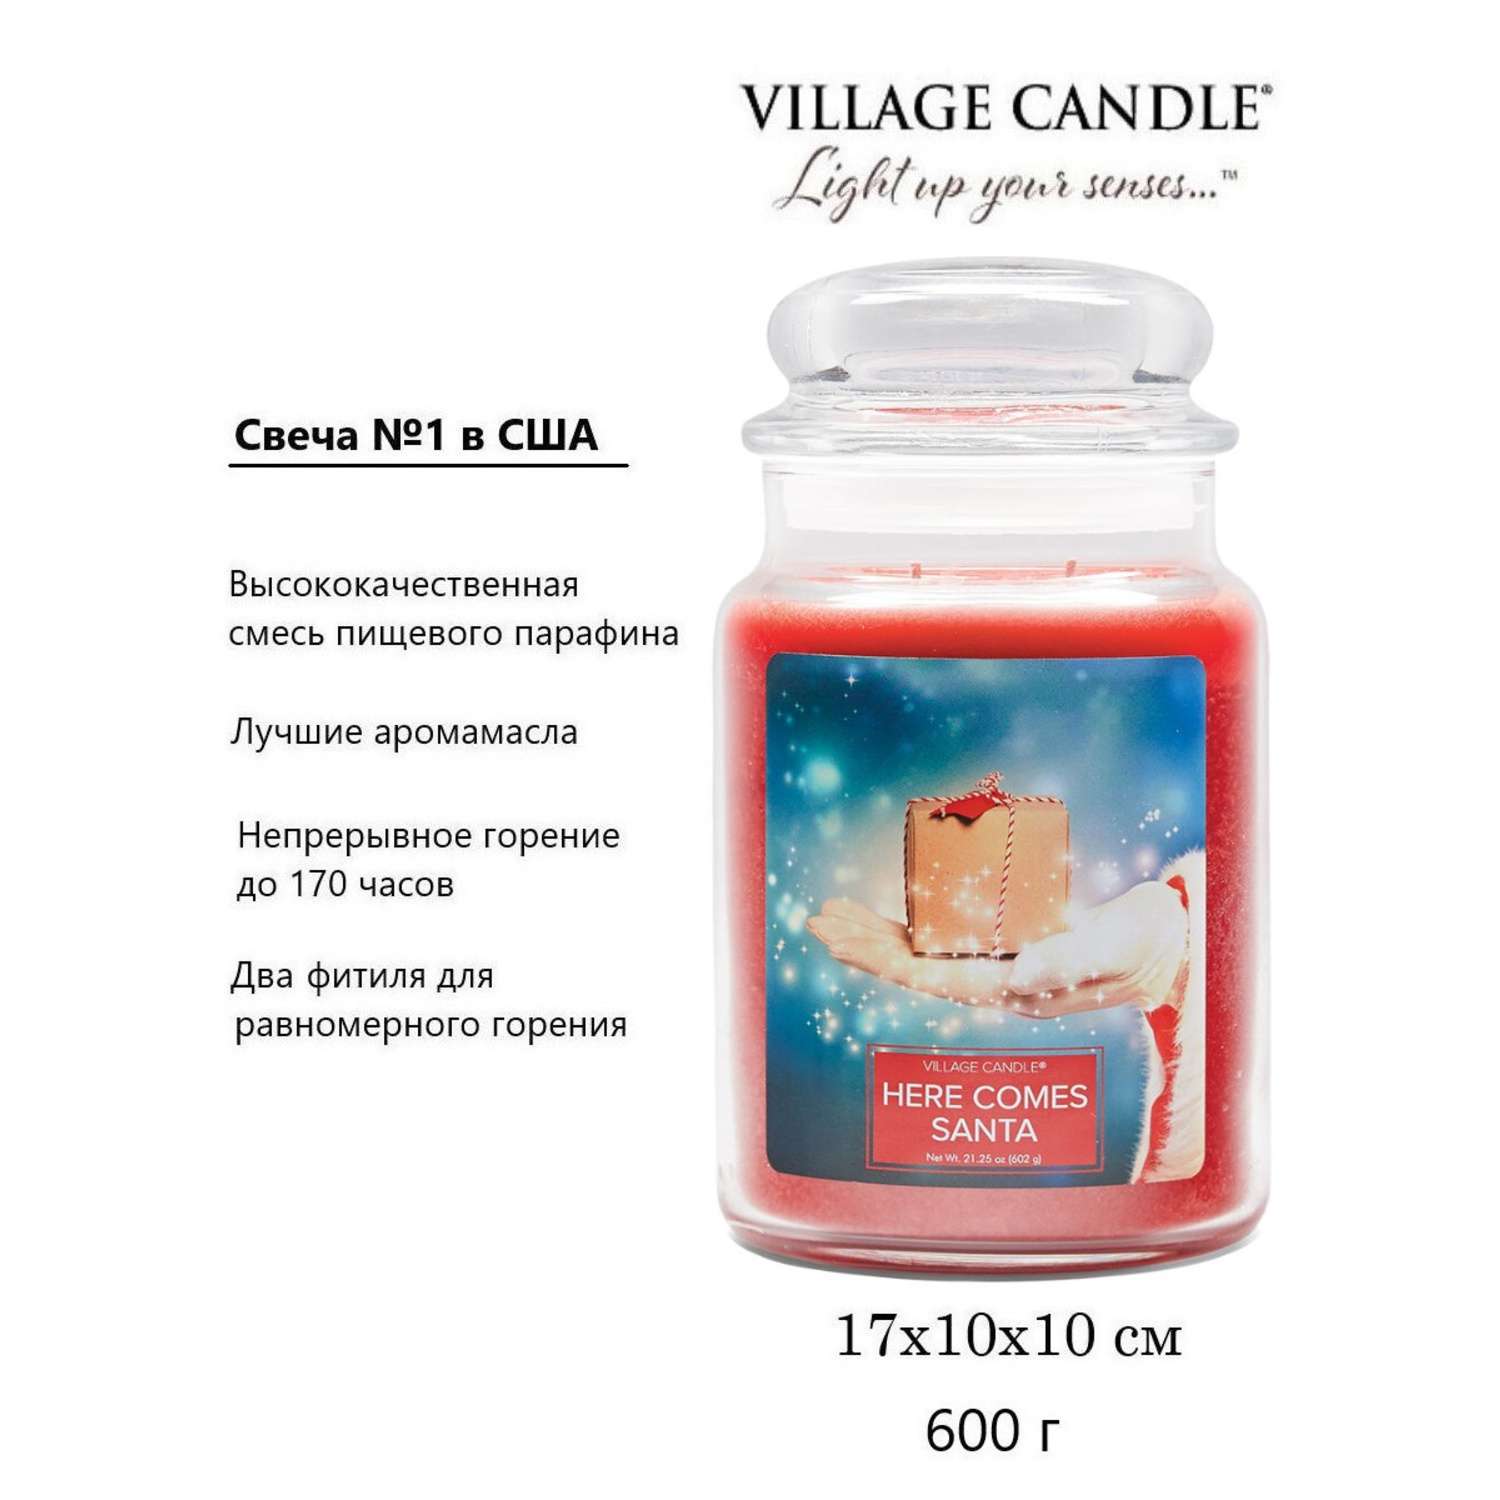 Свеча Village Candle ароматическая Санта Клаус 4260181 - фото 3